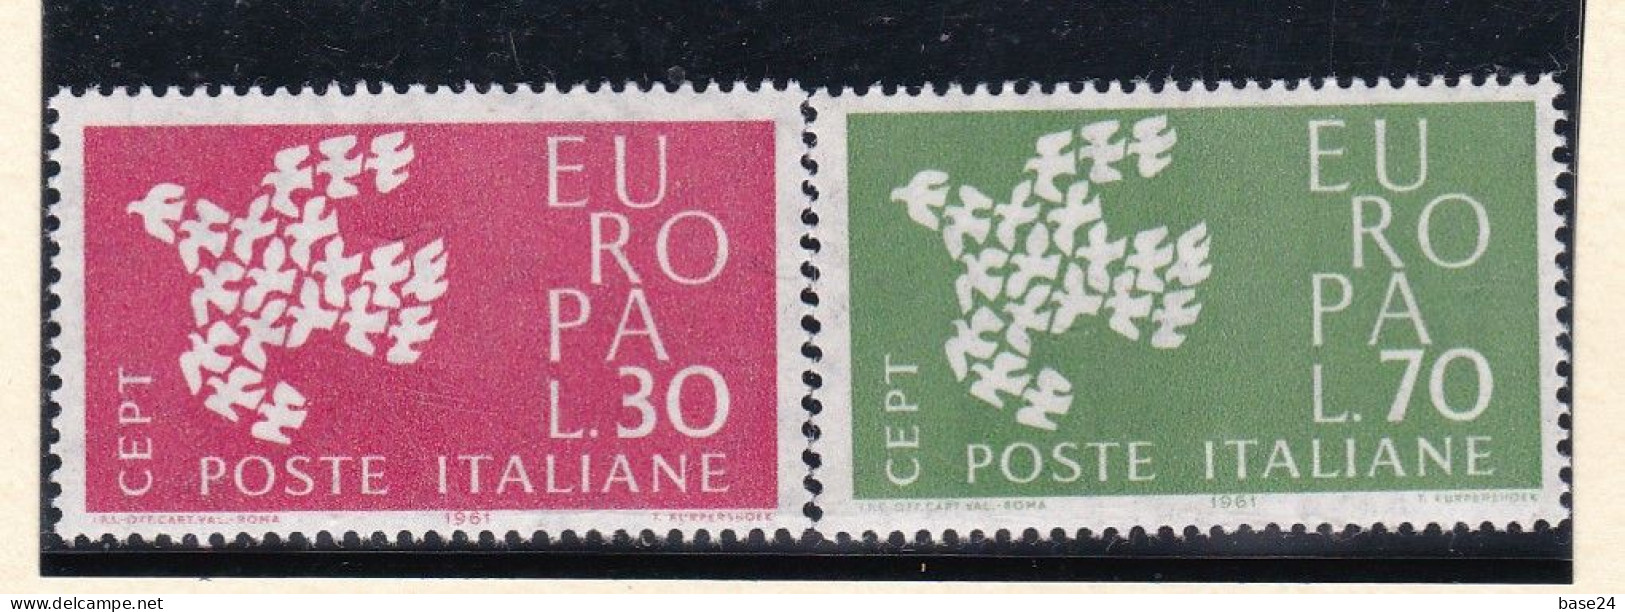 1961 Italia Italy Repubblica EUROPA CEPT  EUROPE Serie Di 2 Valori MNH** COLOMBA - DOVE - 1961